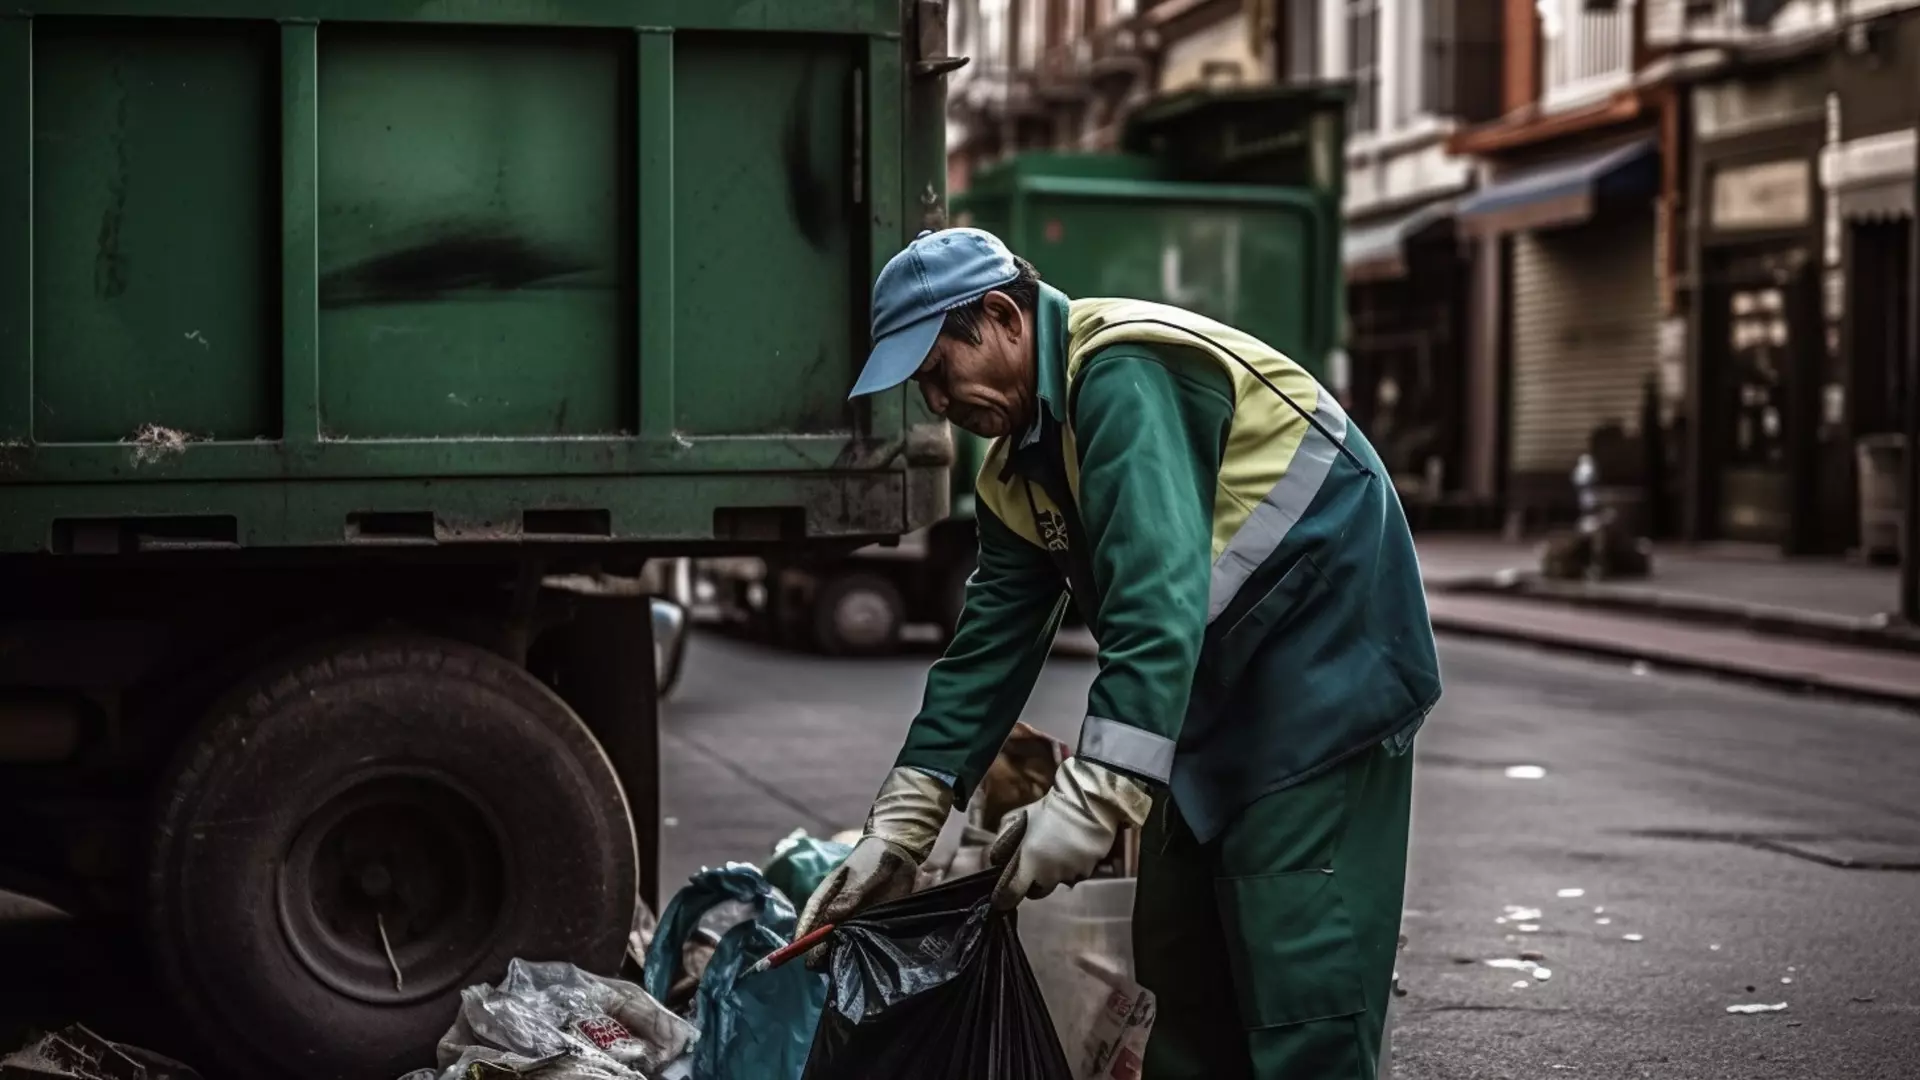 Игра в монополию: как в Удмуртии нарушались права клиентов при вывозе мусора